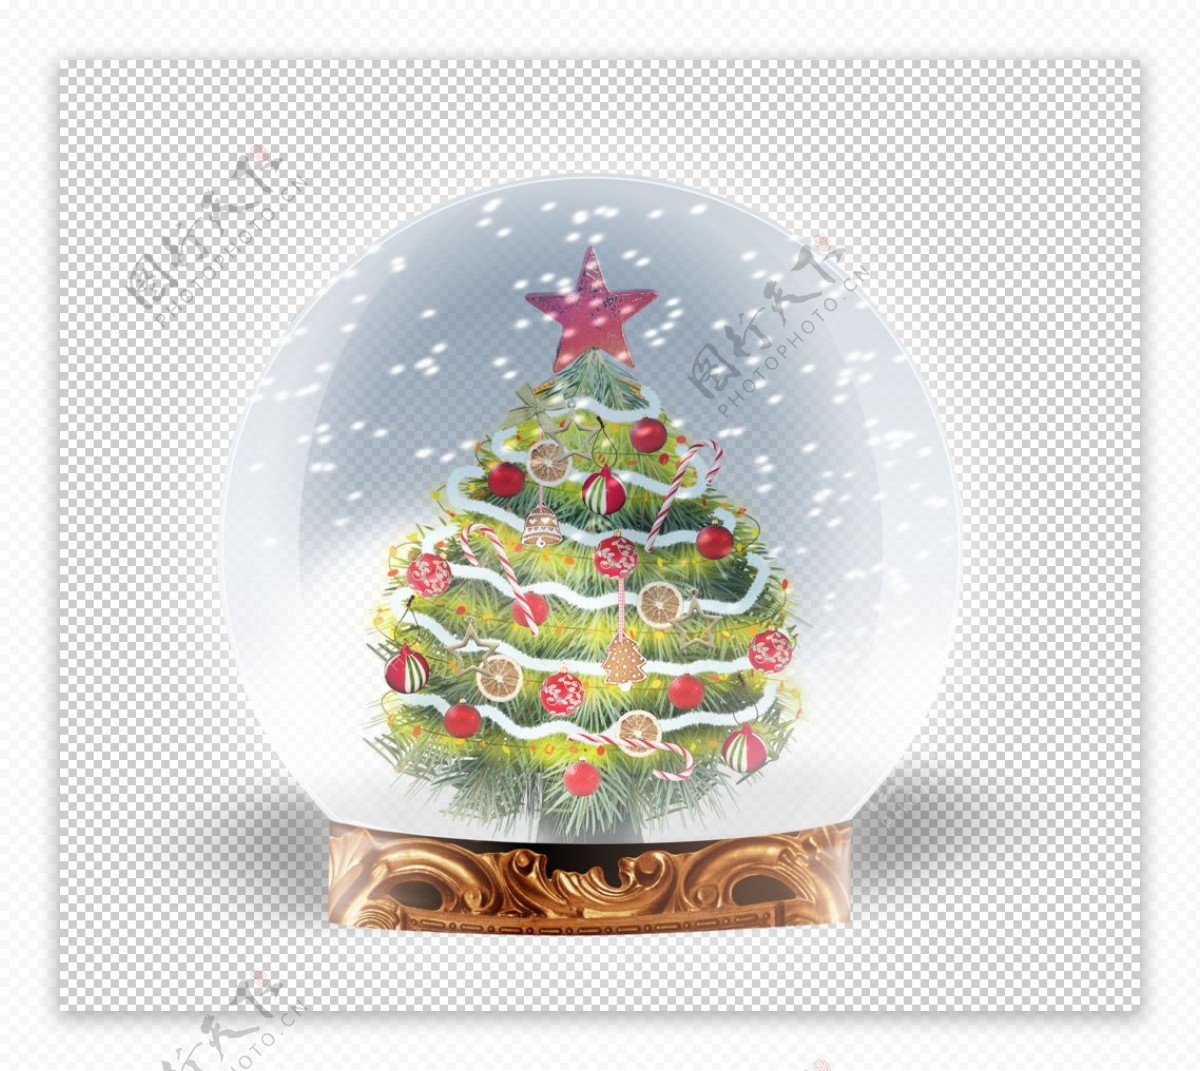 圣诞节装饰玻璃球图片